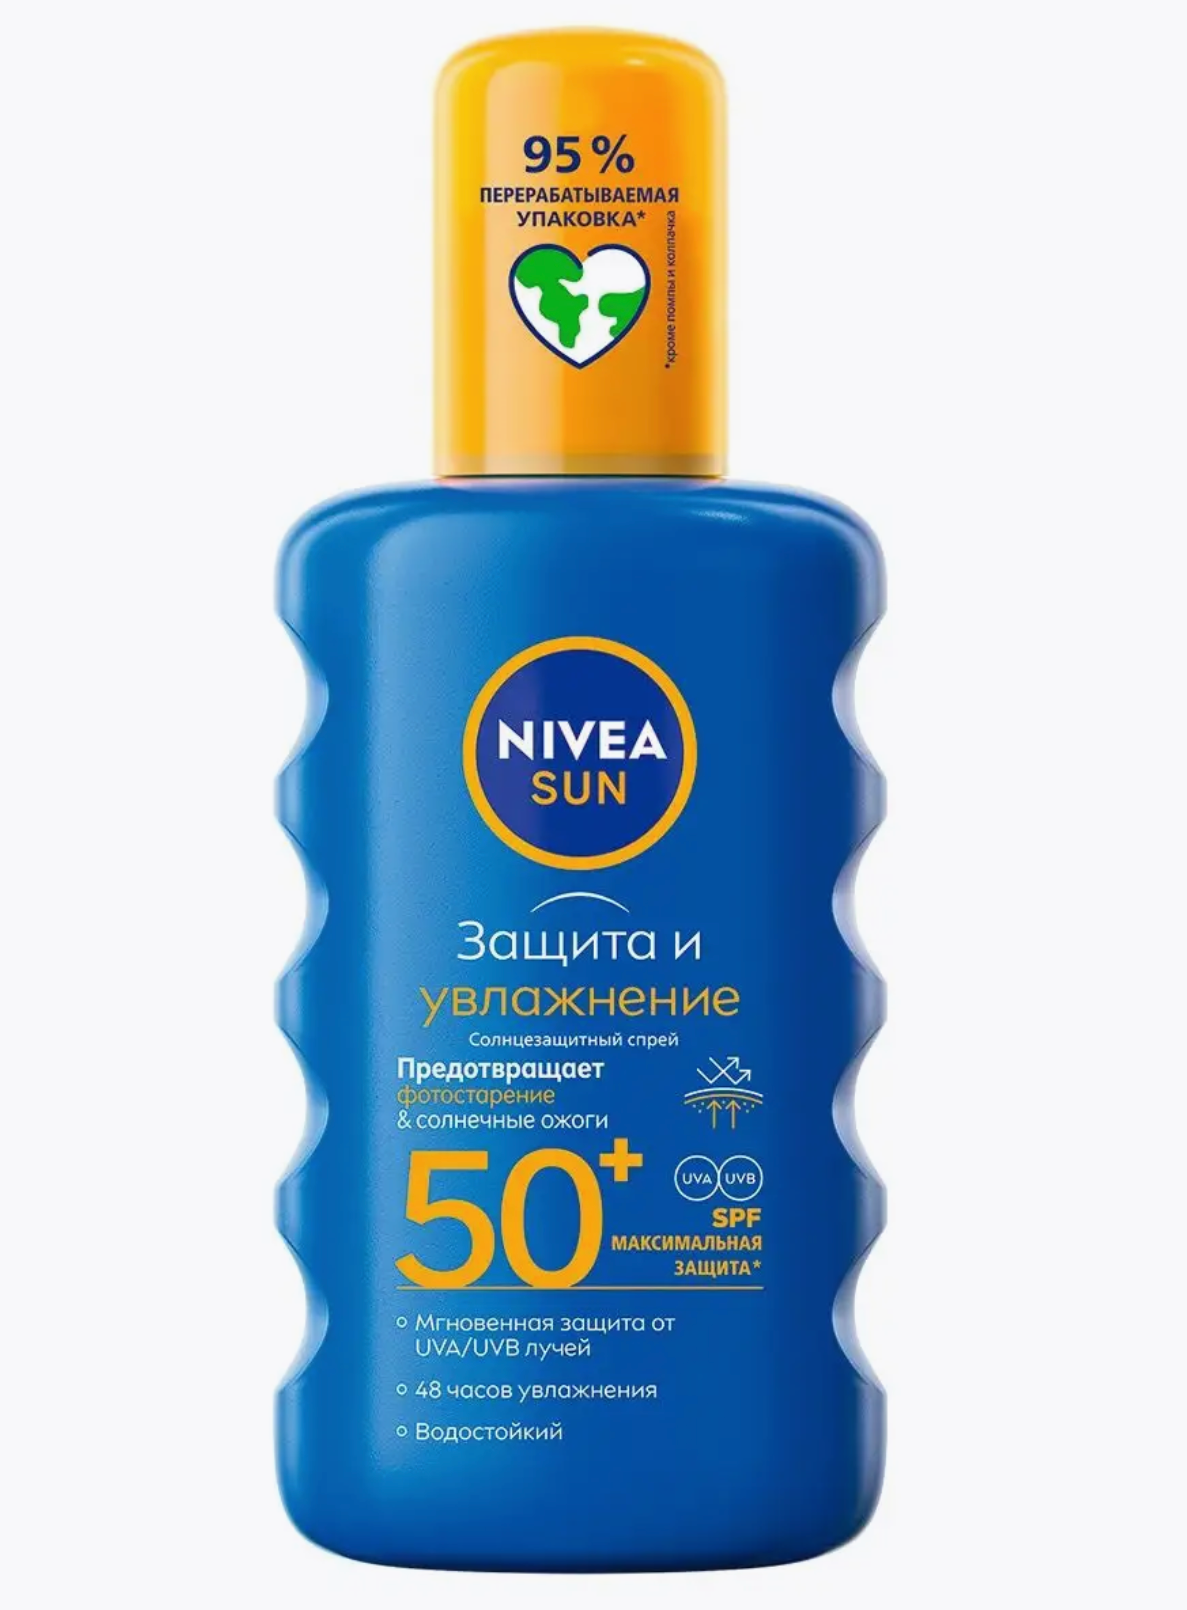 Нивея / Nivea Sun Спрей солнцезащитный для тела Защита и увлажнение 50+SPF максимальная защита 200мл